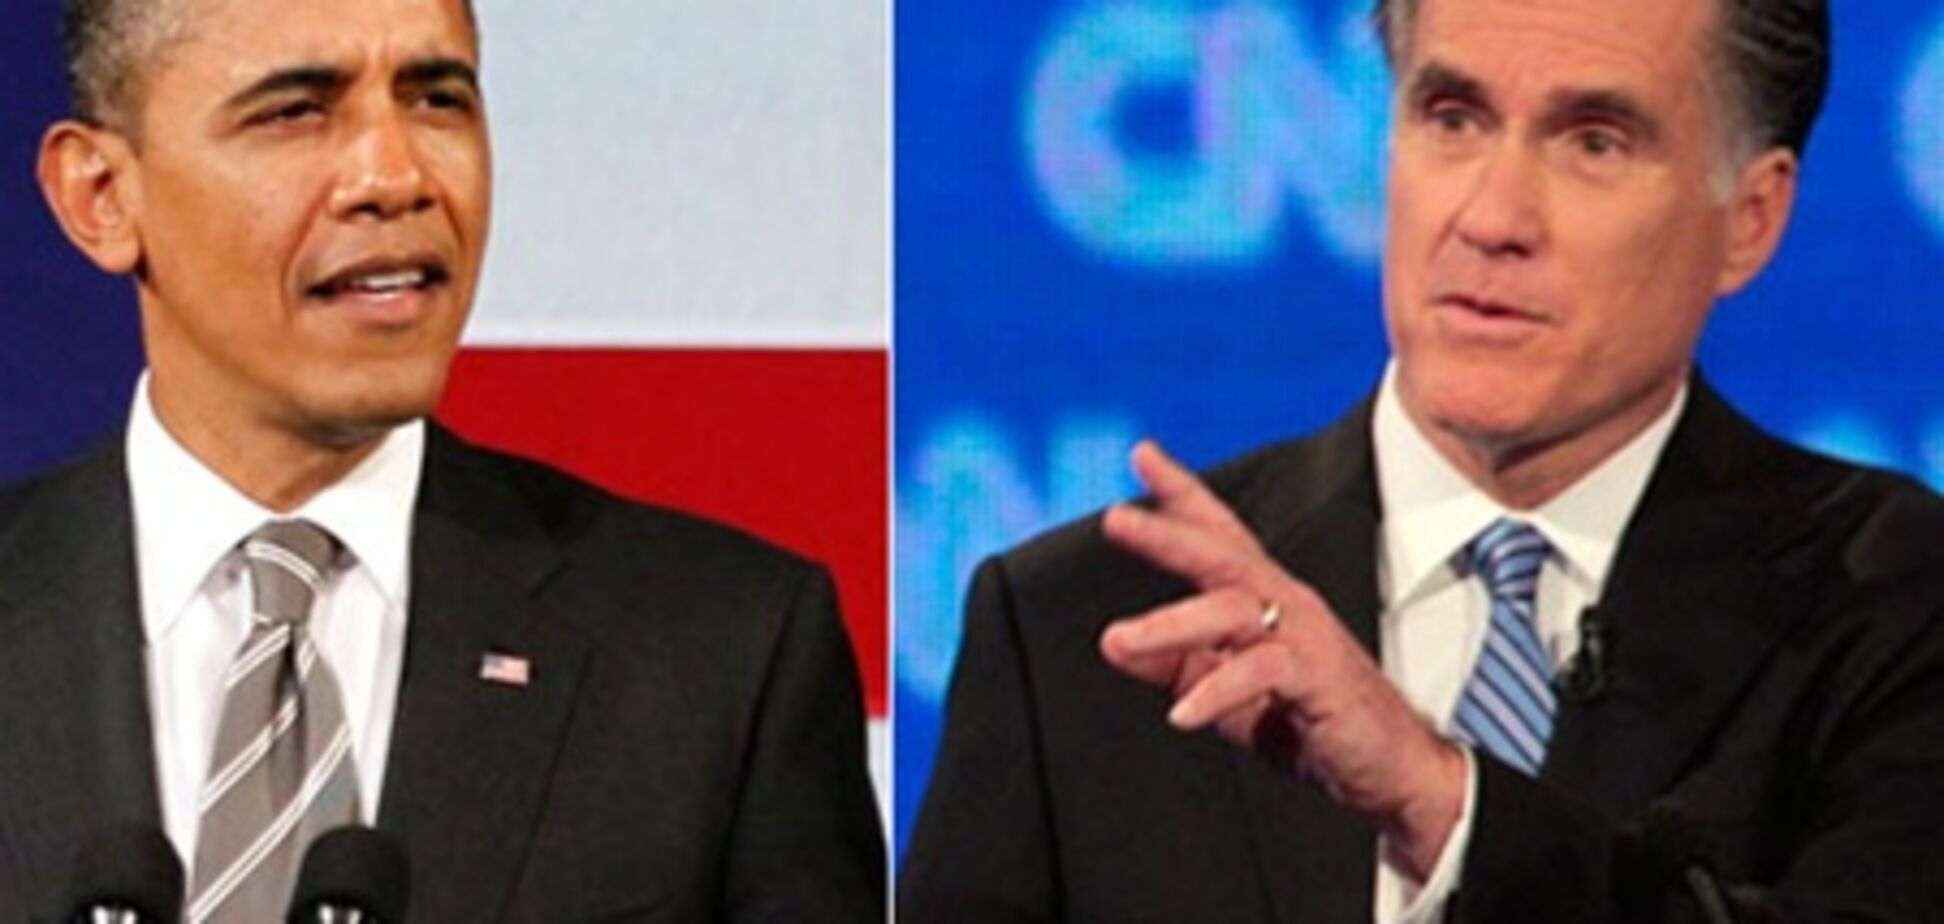 Ромни и Обама имеют равную поддержку избирателей